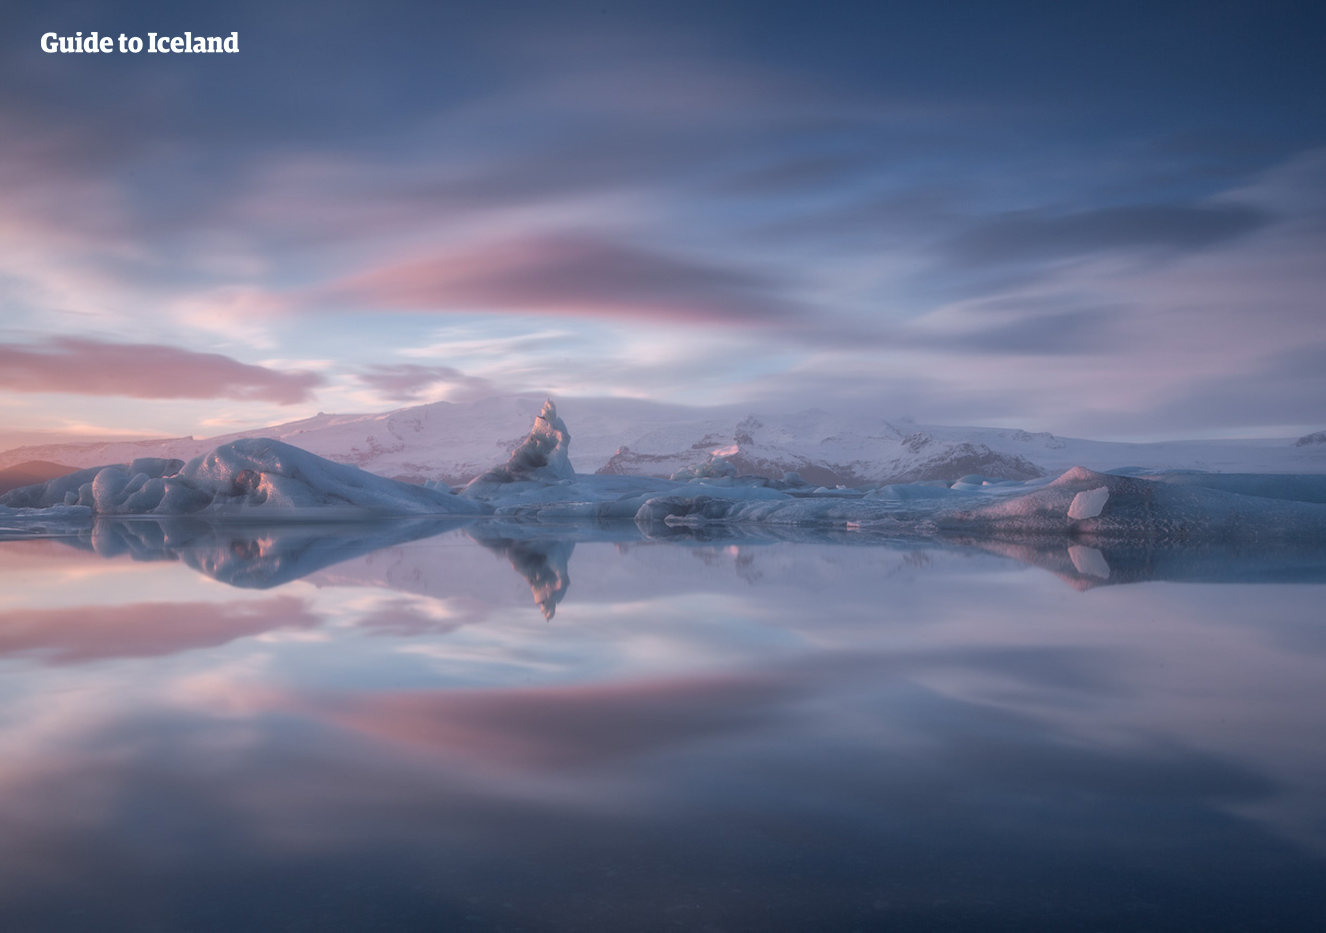 La laguna glaciar de Jökulsárlón es tan impresionante en invierno como en verano.